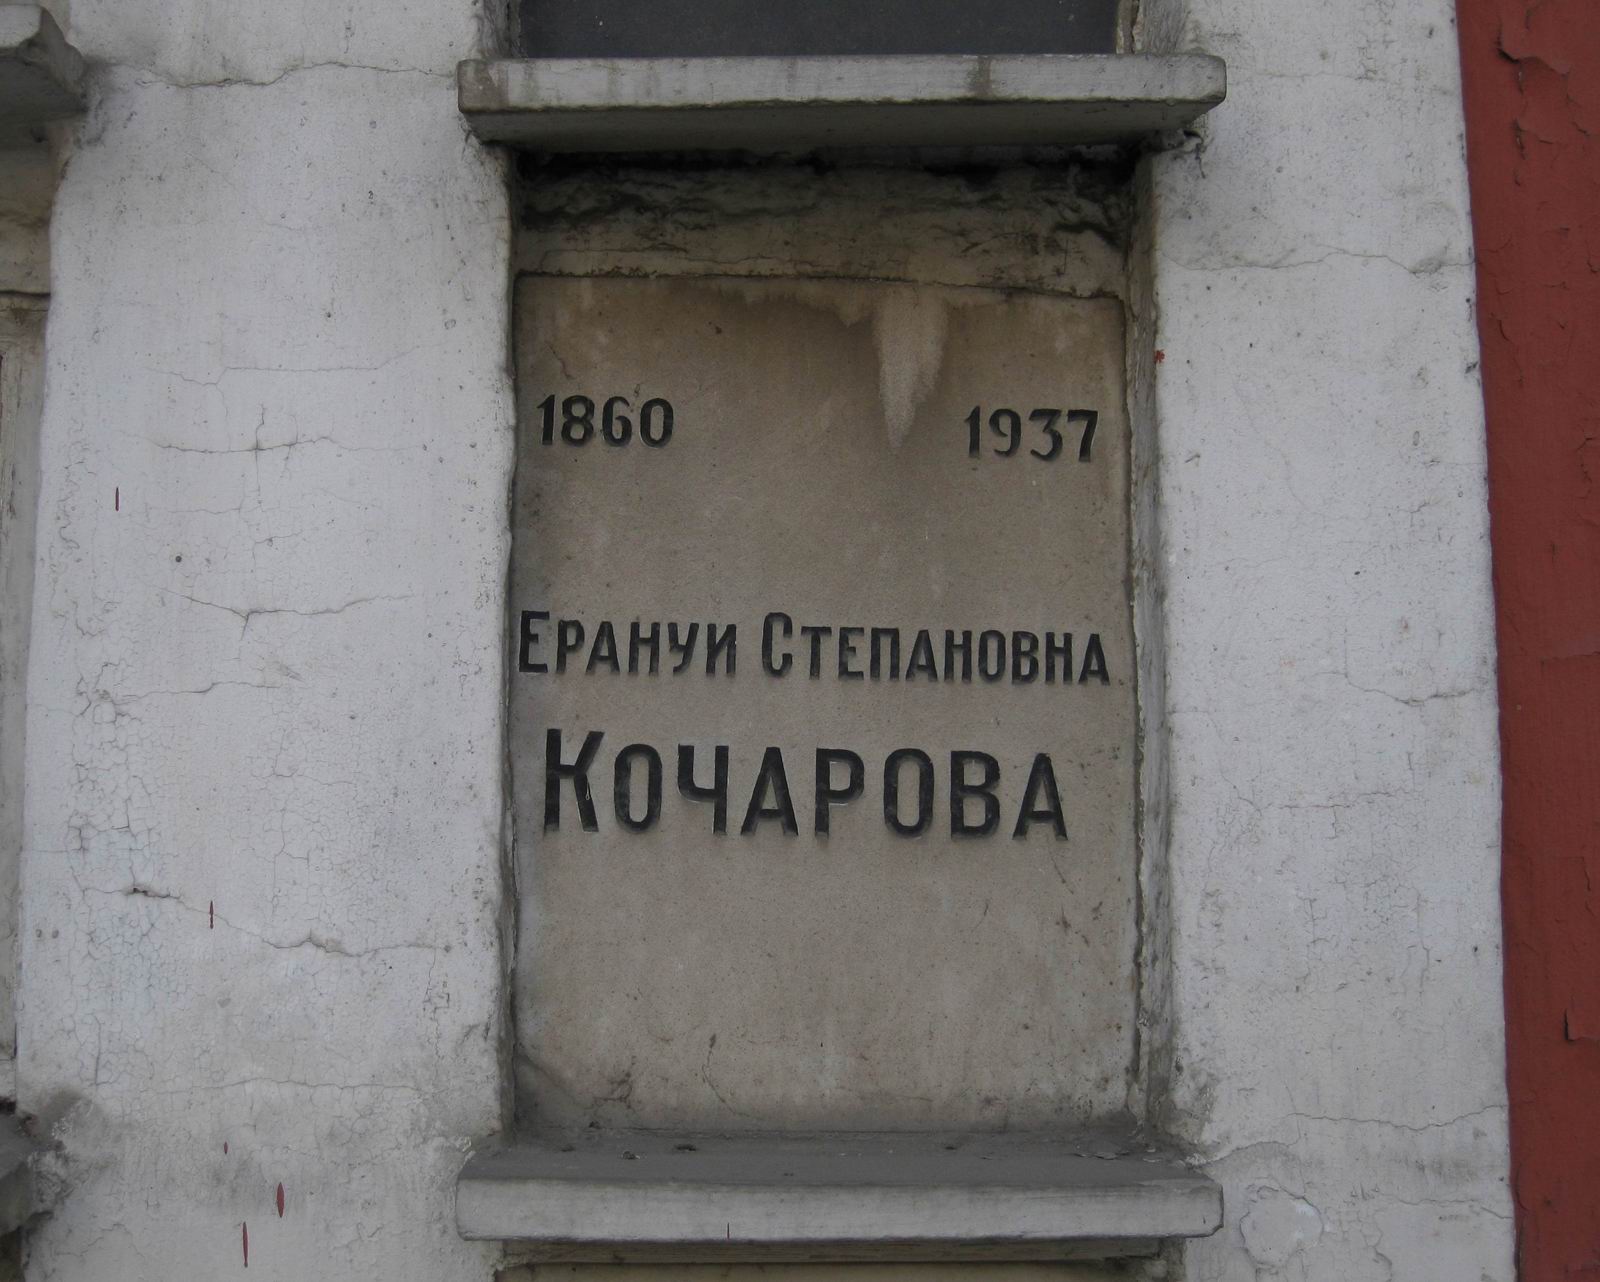 Плита на нише Кочарова Е.С. (1860–1937), на Новодевичьем кладбище (колумбарий [45]–5–2).